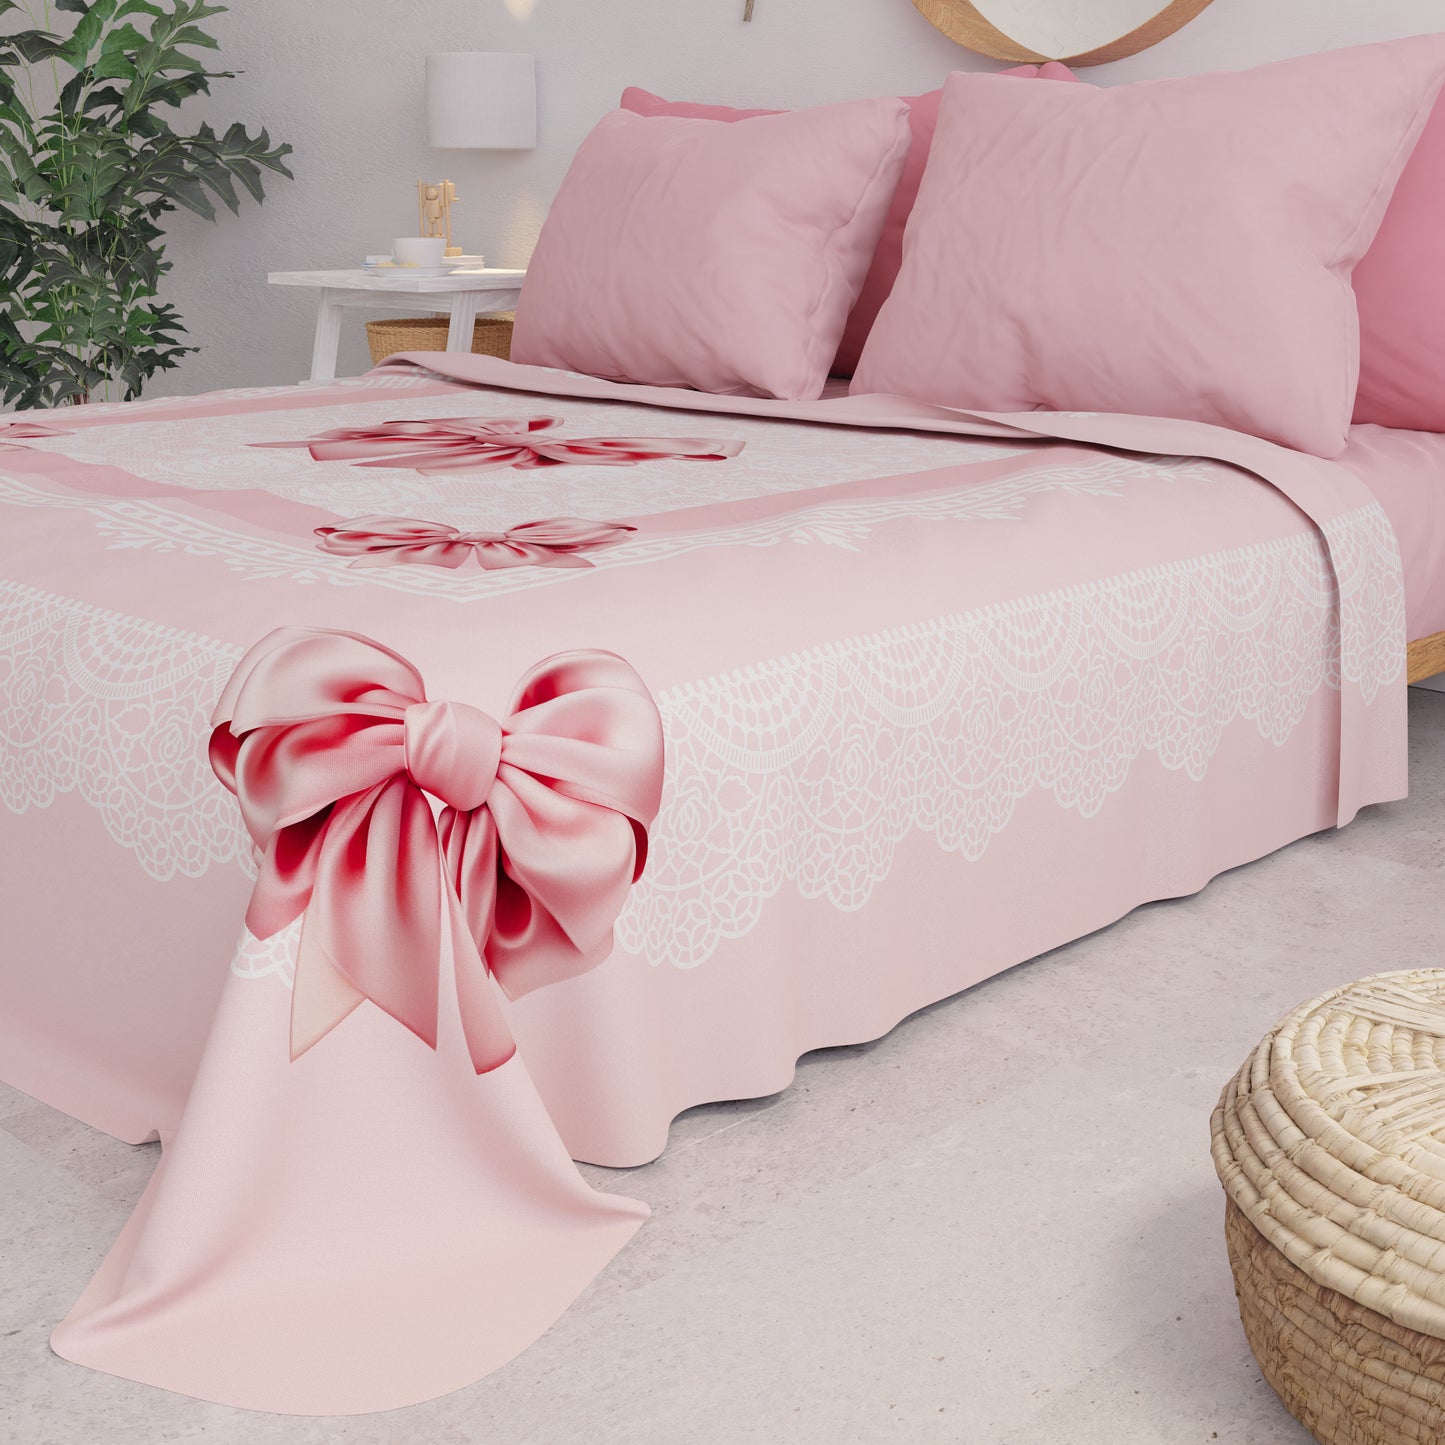 Summer Bedspread, Light Blanket, Bedspread Sheets, Pink Bow